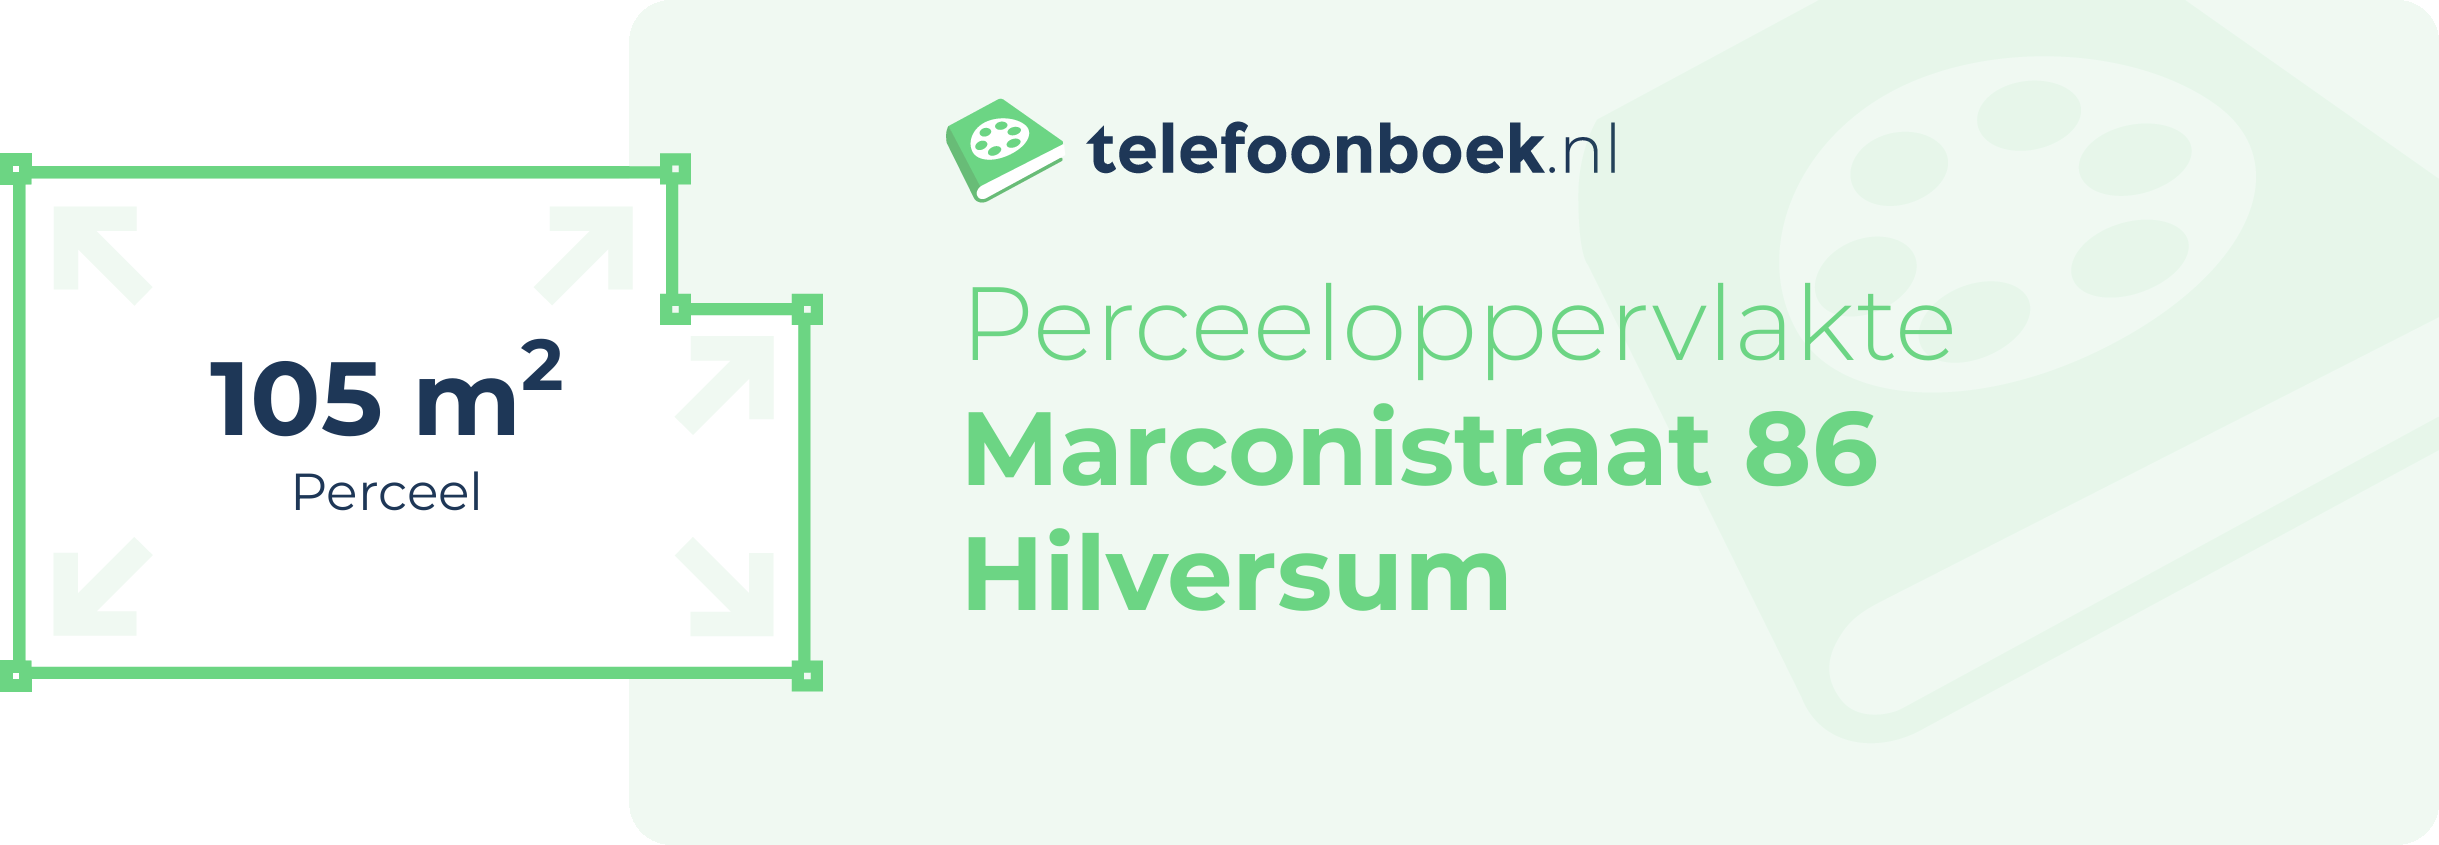 Perceeloppervlakte Marconistraat 86 Hilversum